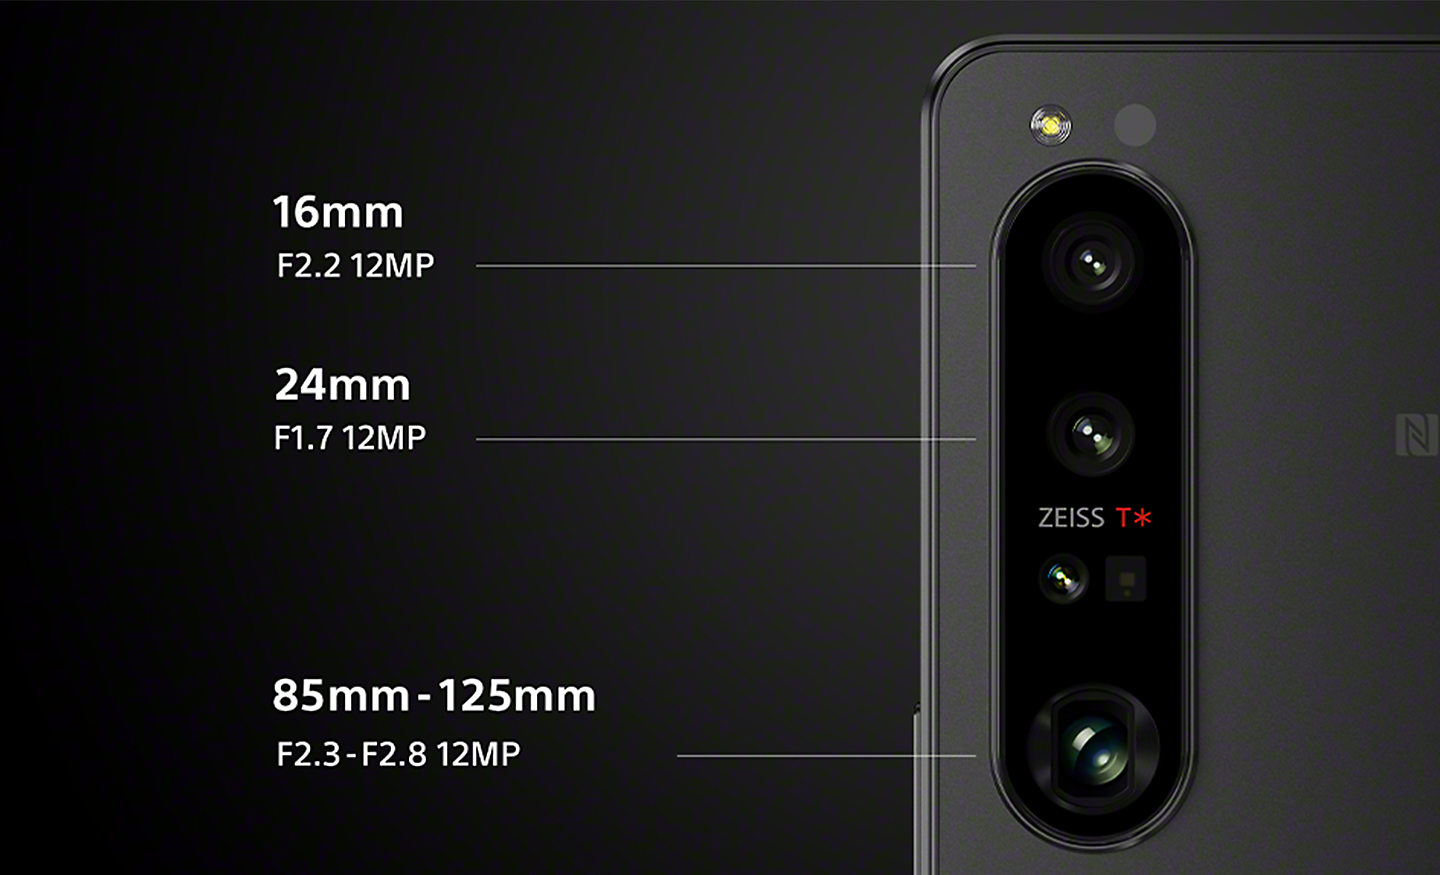 Približan posnetek fotoaparata telefona Xperia 1 IV s tremi objektivi z napisom za 16mm F2.2 12MP, 24mm F1.7 12MP & 85mm-125mm F2.3-F2.8 12MP